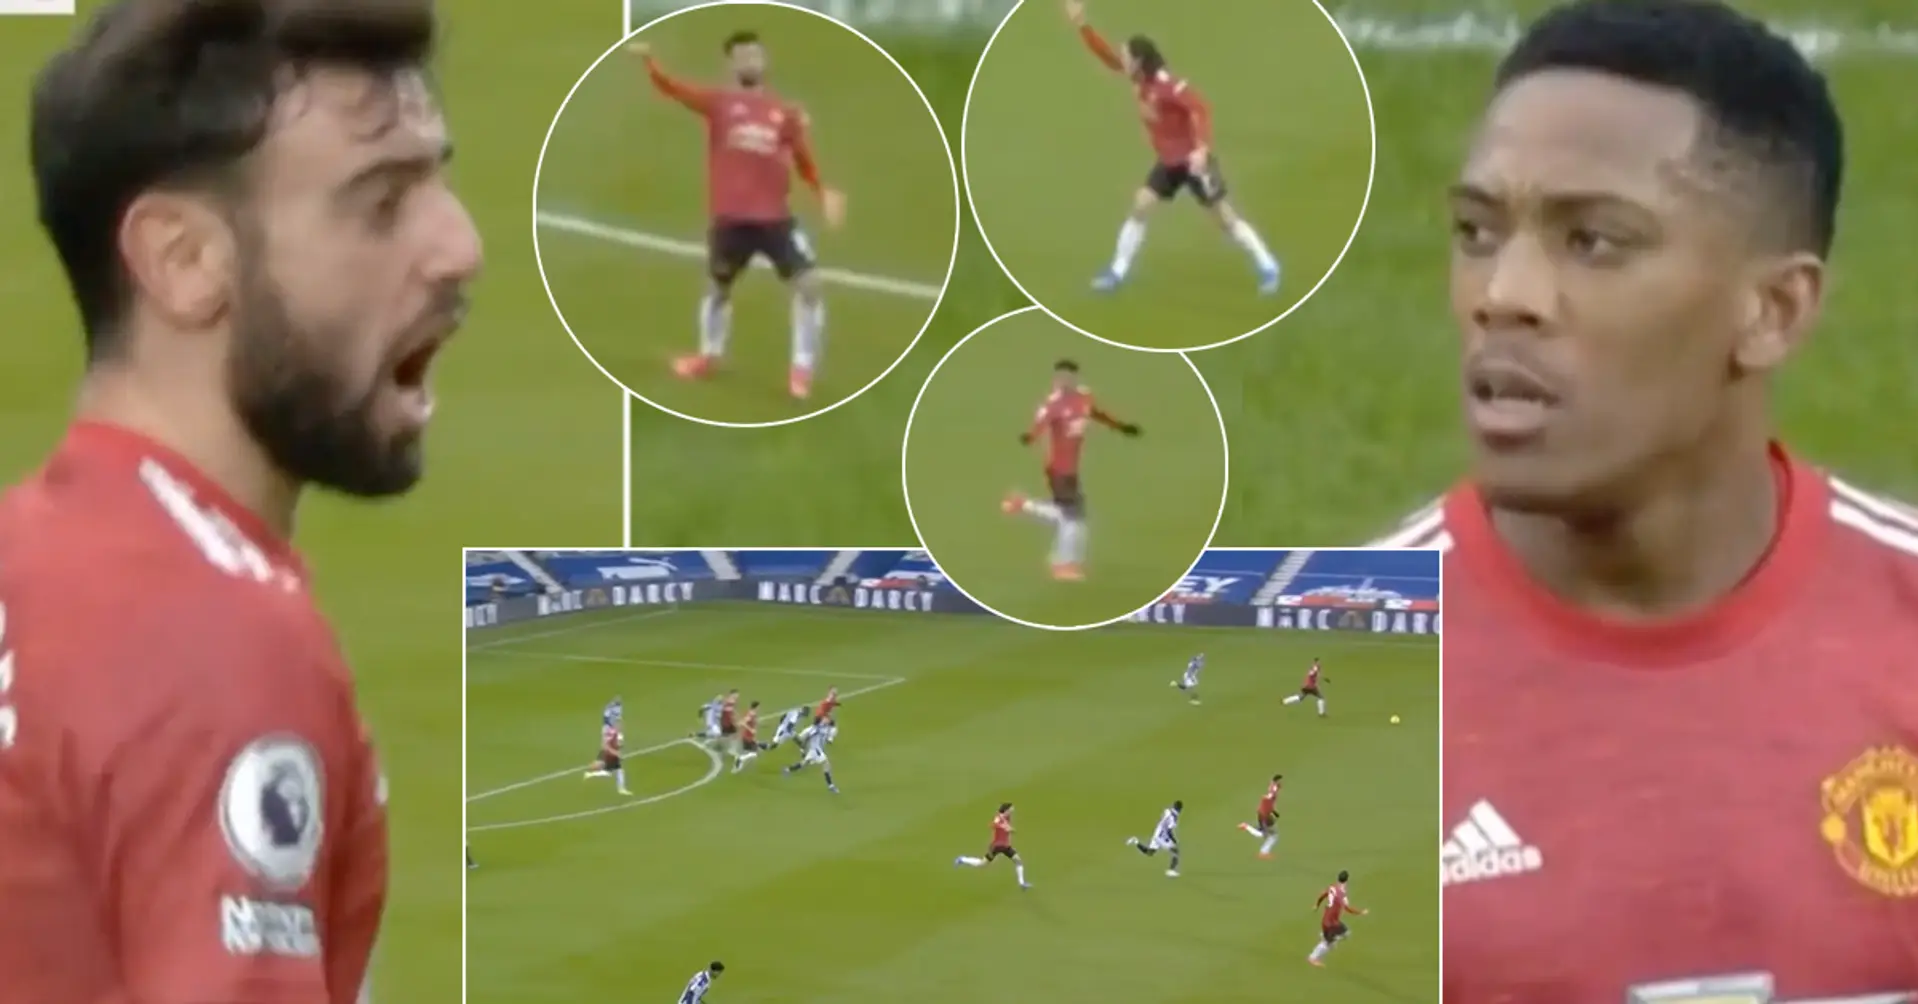 "Non è un errore". L'arbitro fischia la fine del 1° tempo in contropiede con 3 attaccanti del Man Utd liberi contro il portiere